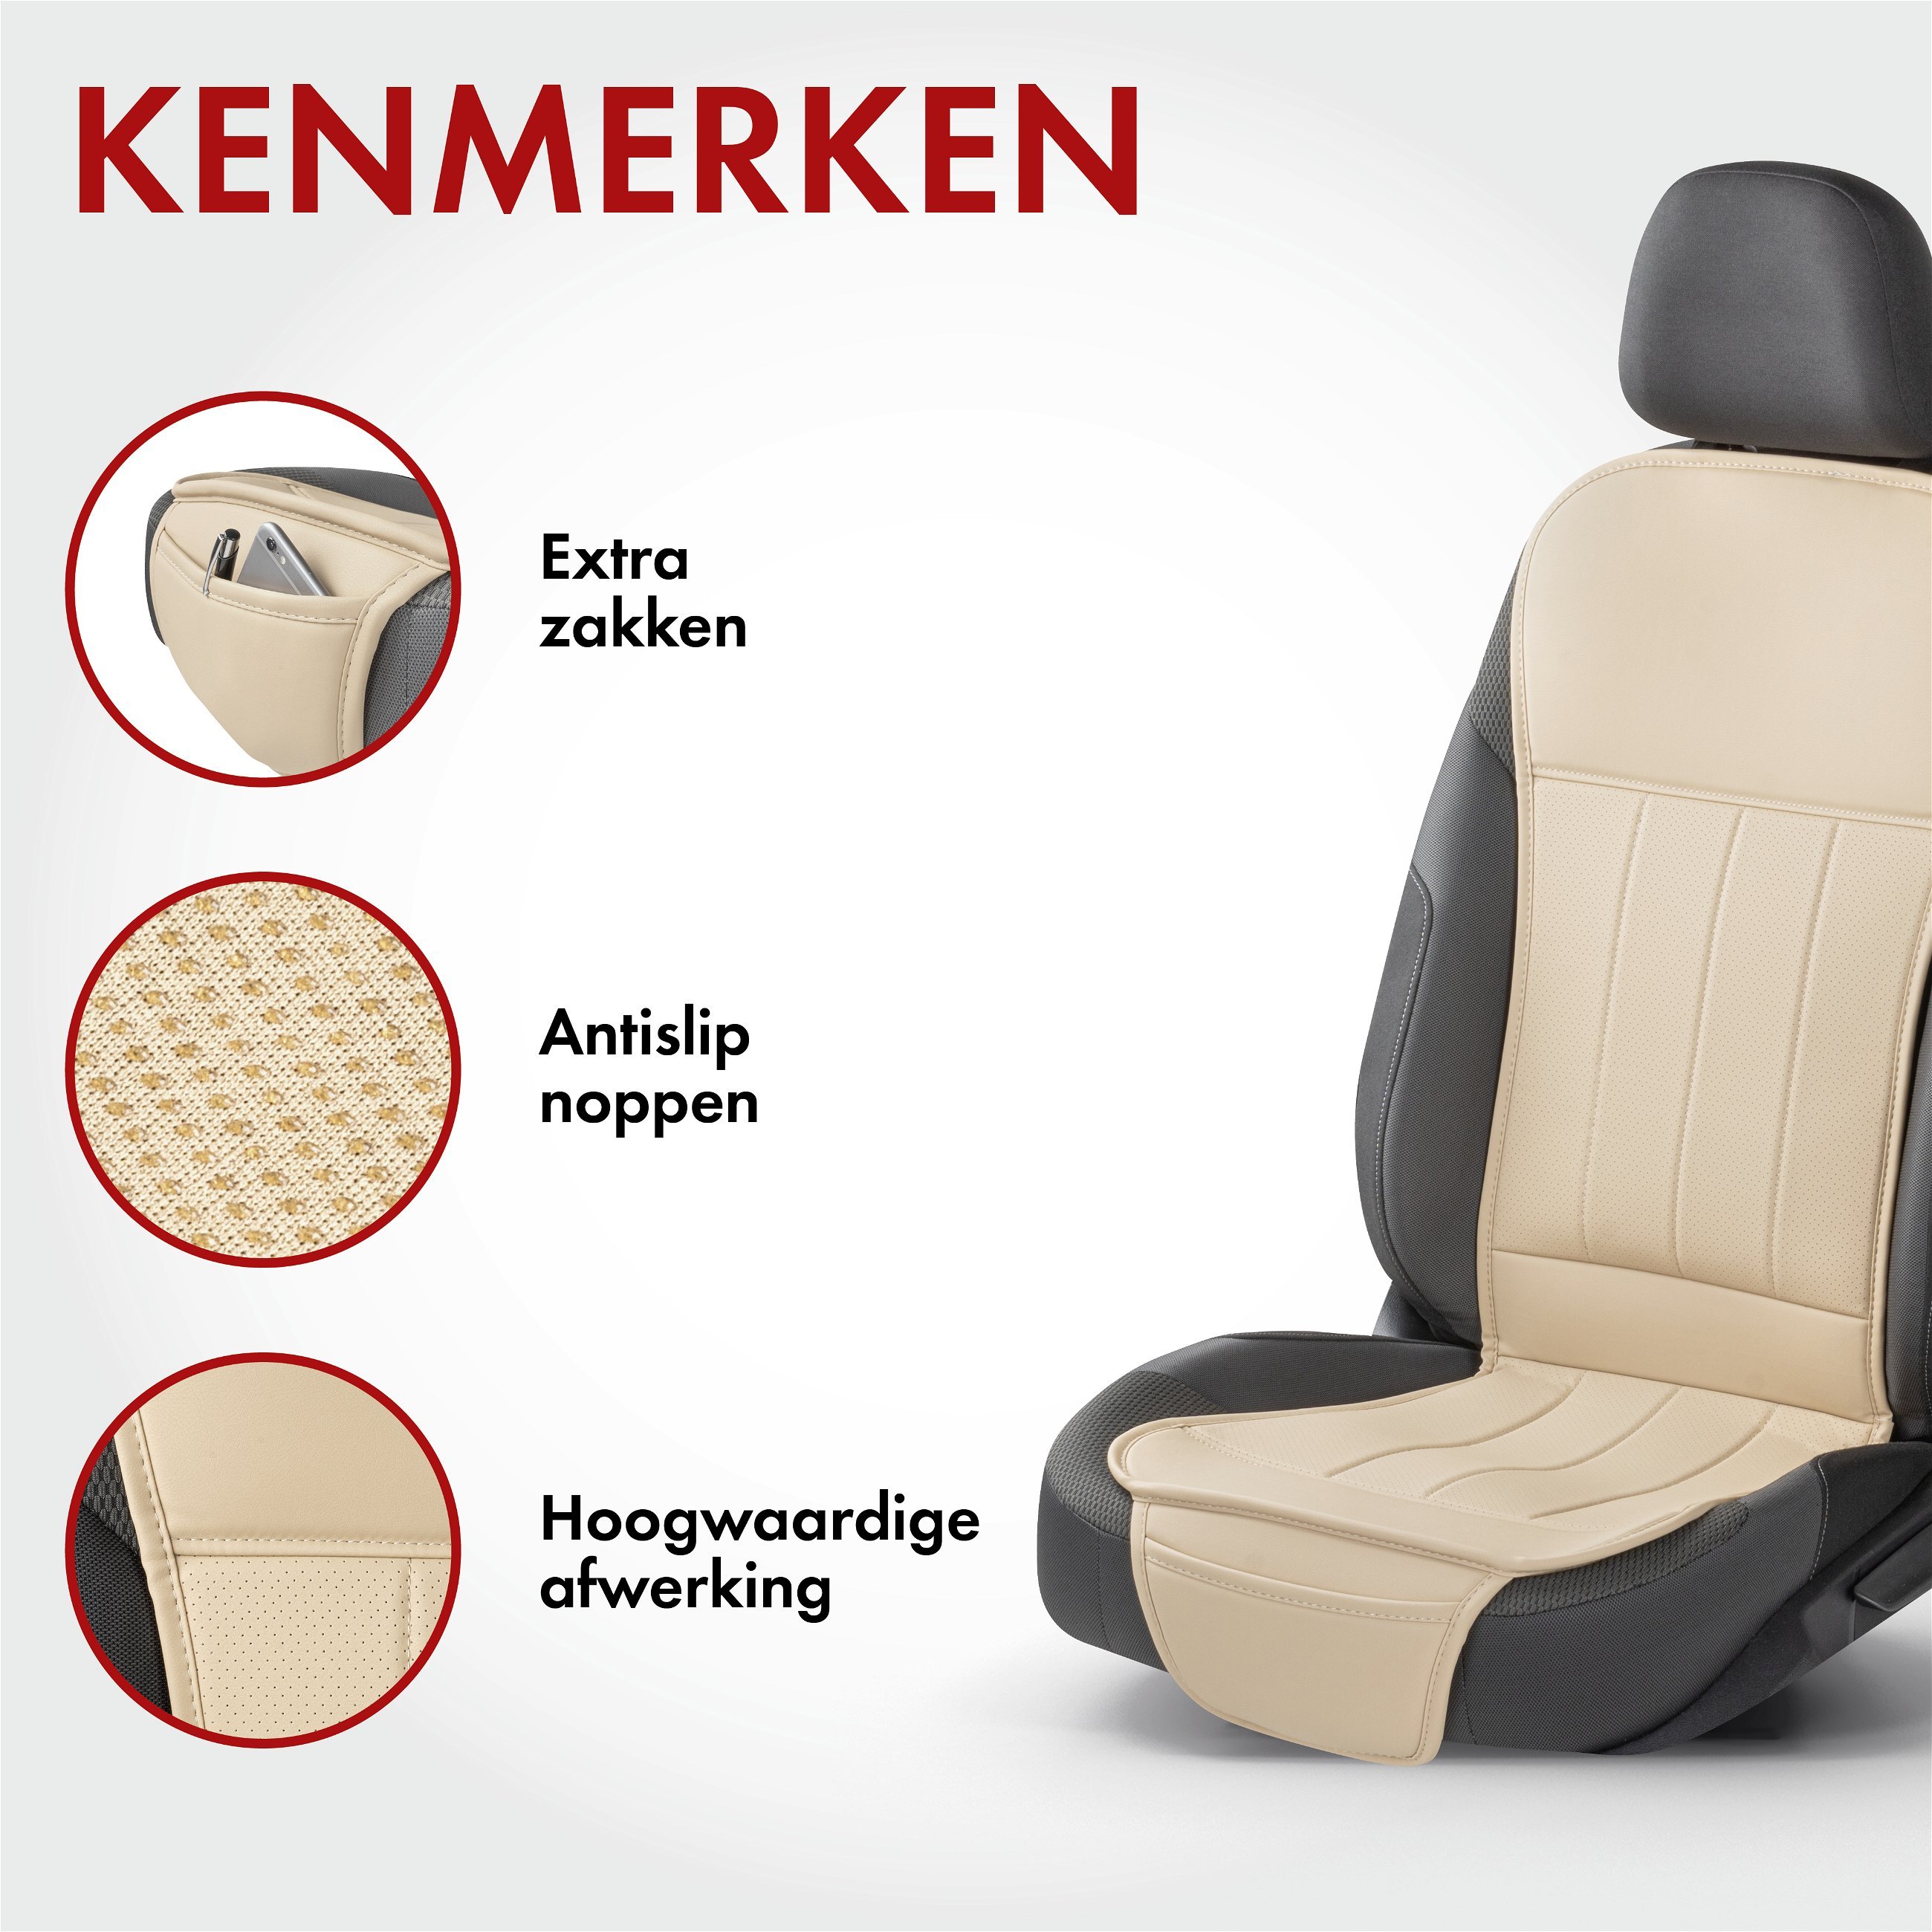 Autostoelhoes Lewis, universele stoelhoes en beschermmat in beige, stoelbeschermer voor auto's en vrachtwagens